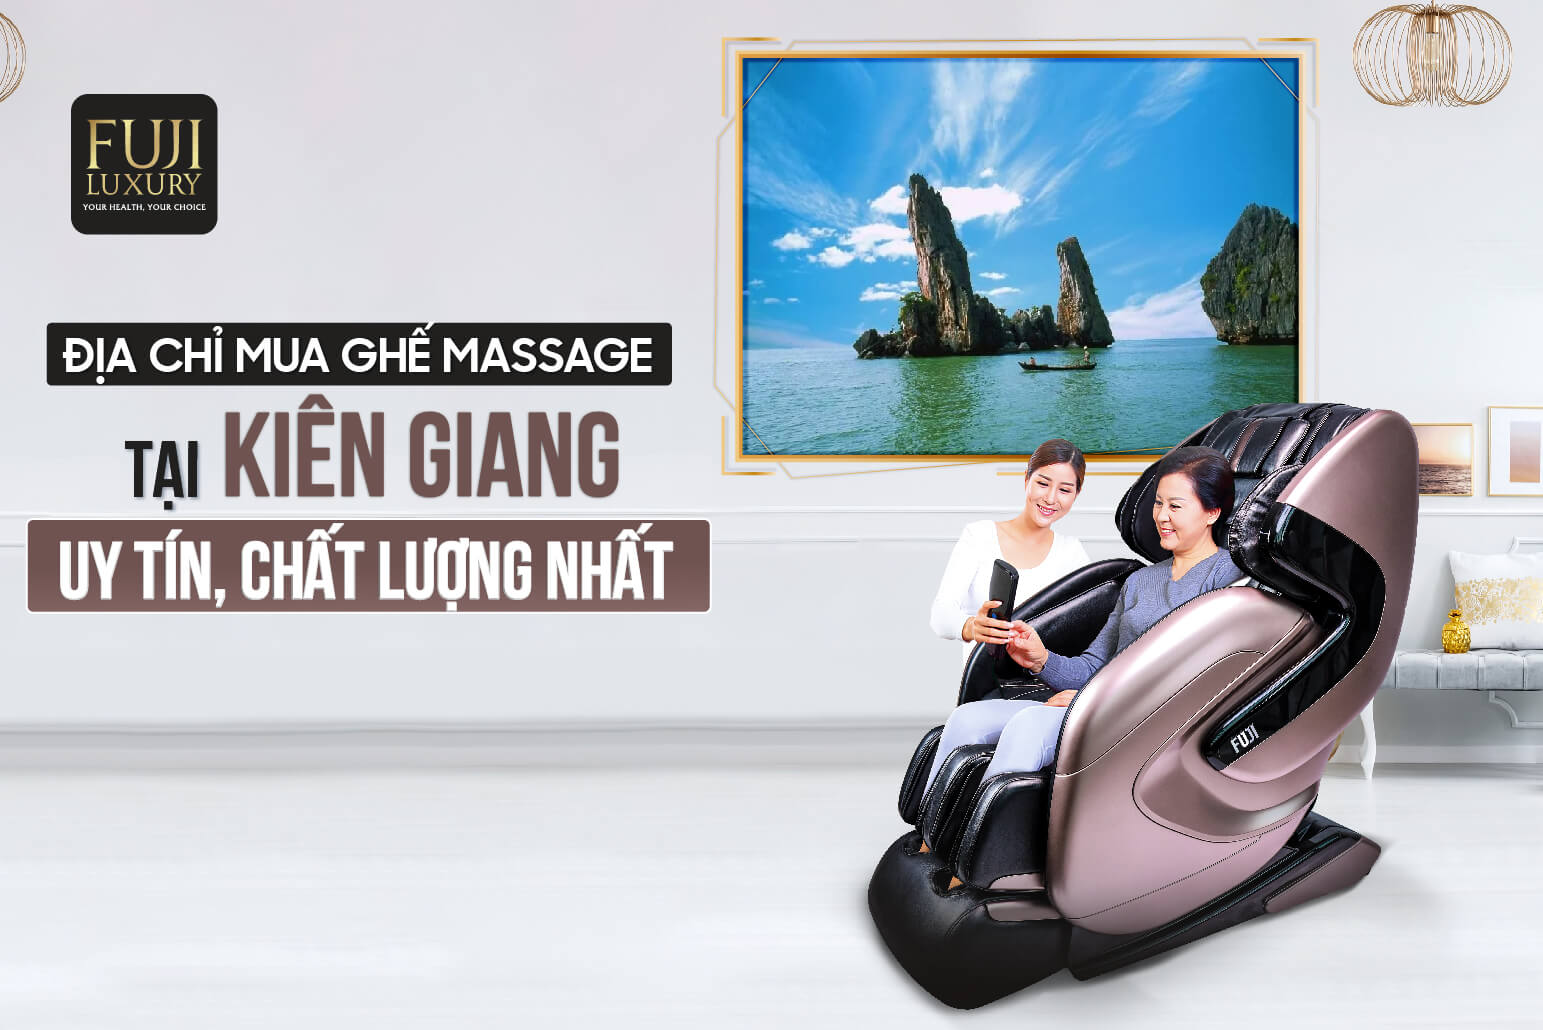 Địa chỉ mua ghế massage Kiên Giang uy tín, chất lượng nhất 